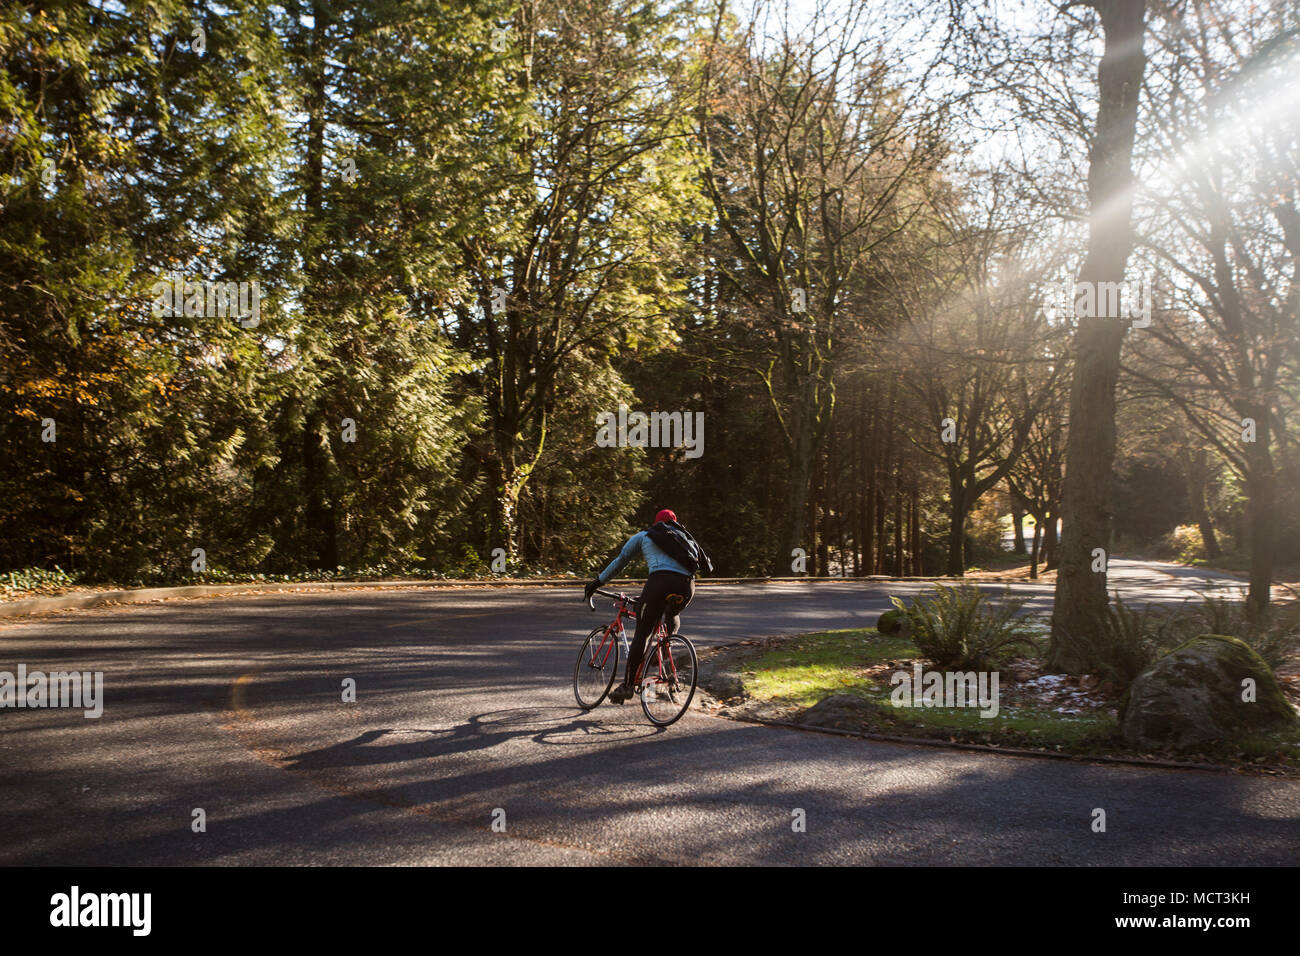 Cyclisme sur route homme entouré d'arbres, Seattle, Washington State, USA Banque D'Images